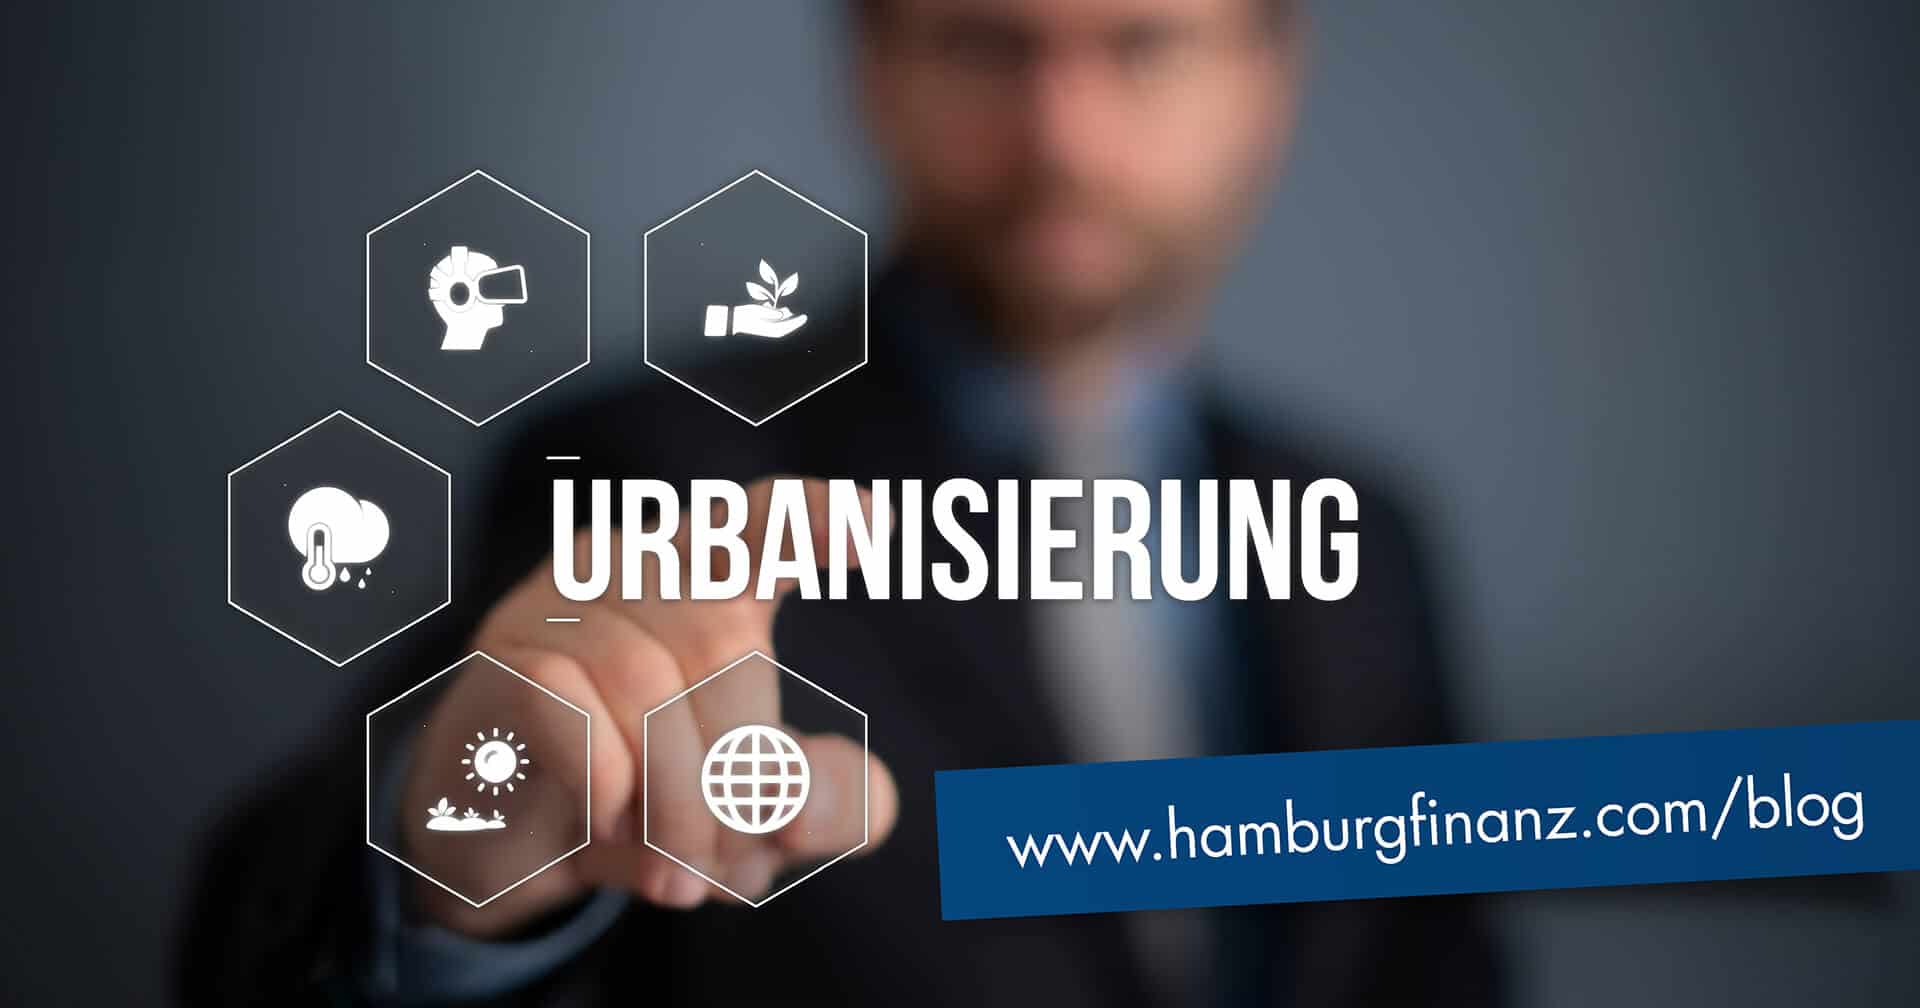 Urbanisierung: Wie werden wir morgen in Städten leben?